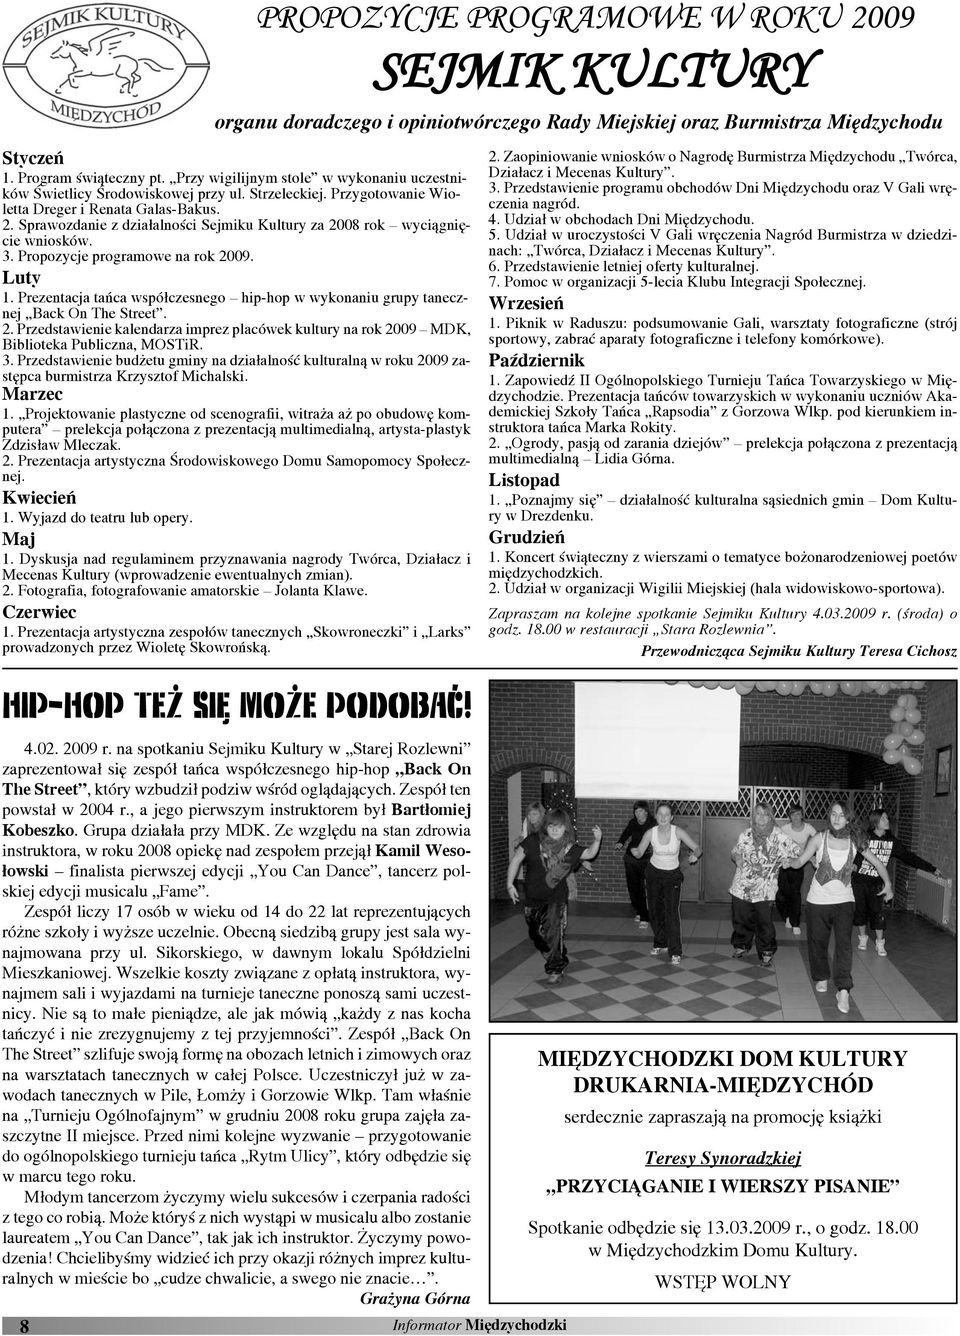 Prezentacja tańca współczesnego hip-hop w wykonaniu grupy tanecznej Back On The Street. 2. Przedstawie kalendarza imprez placówek kultury na rok 2009 MDK, Biblioteka Publiczna, MOSTiR. 3.